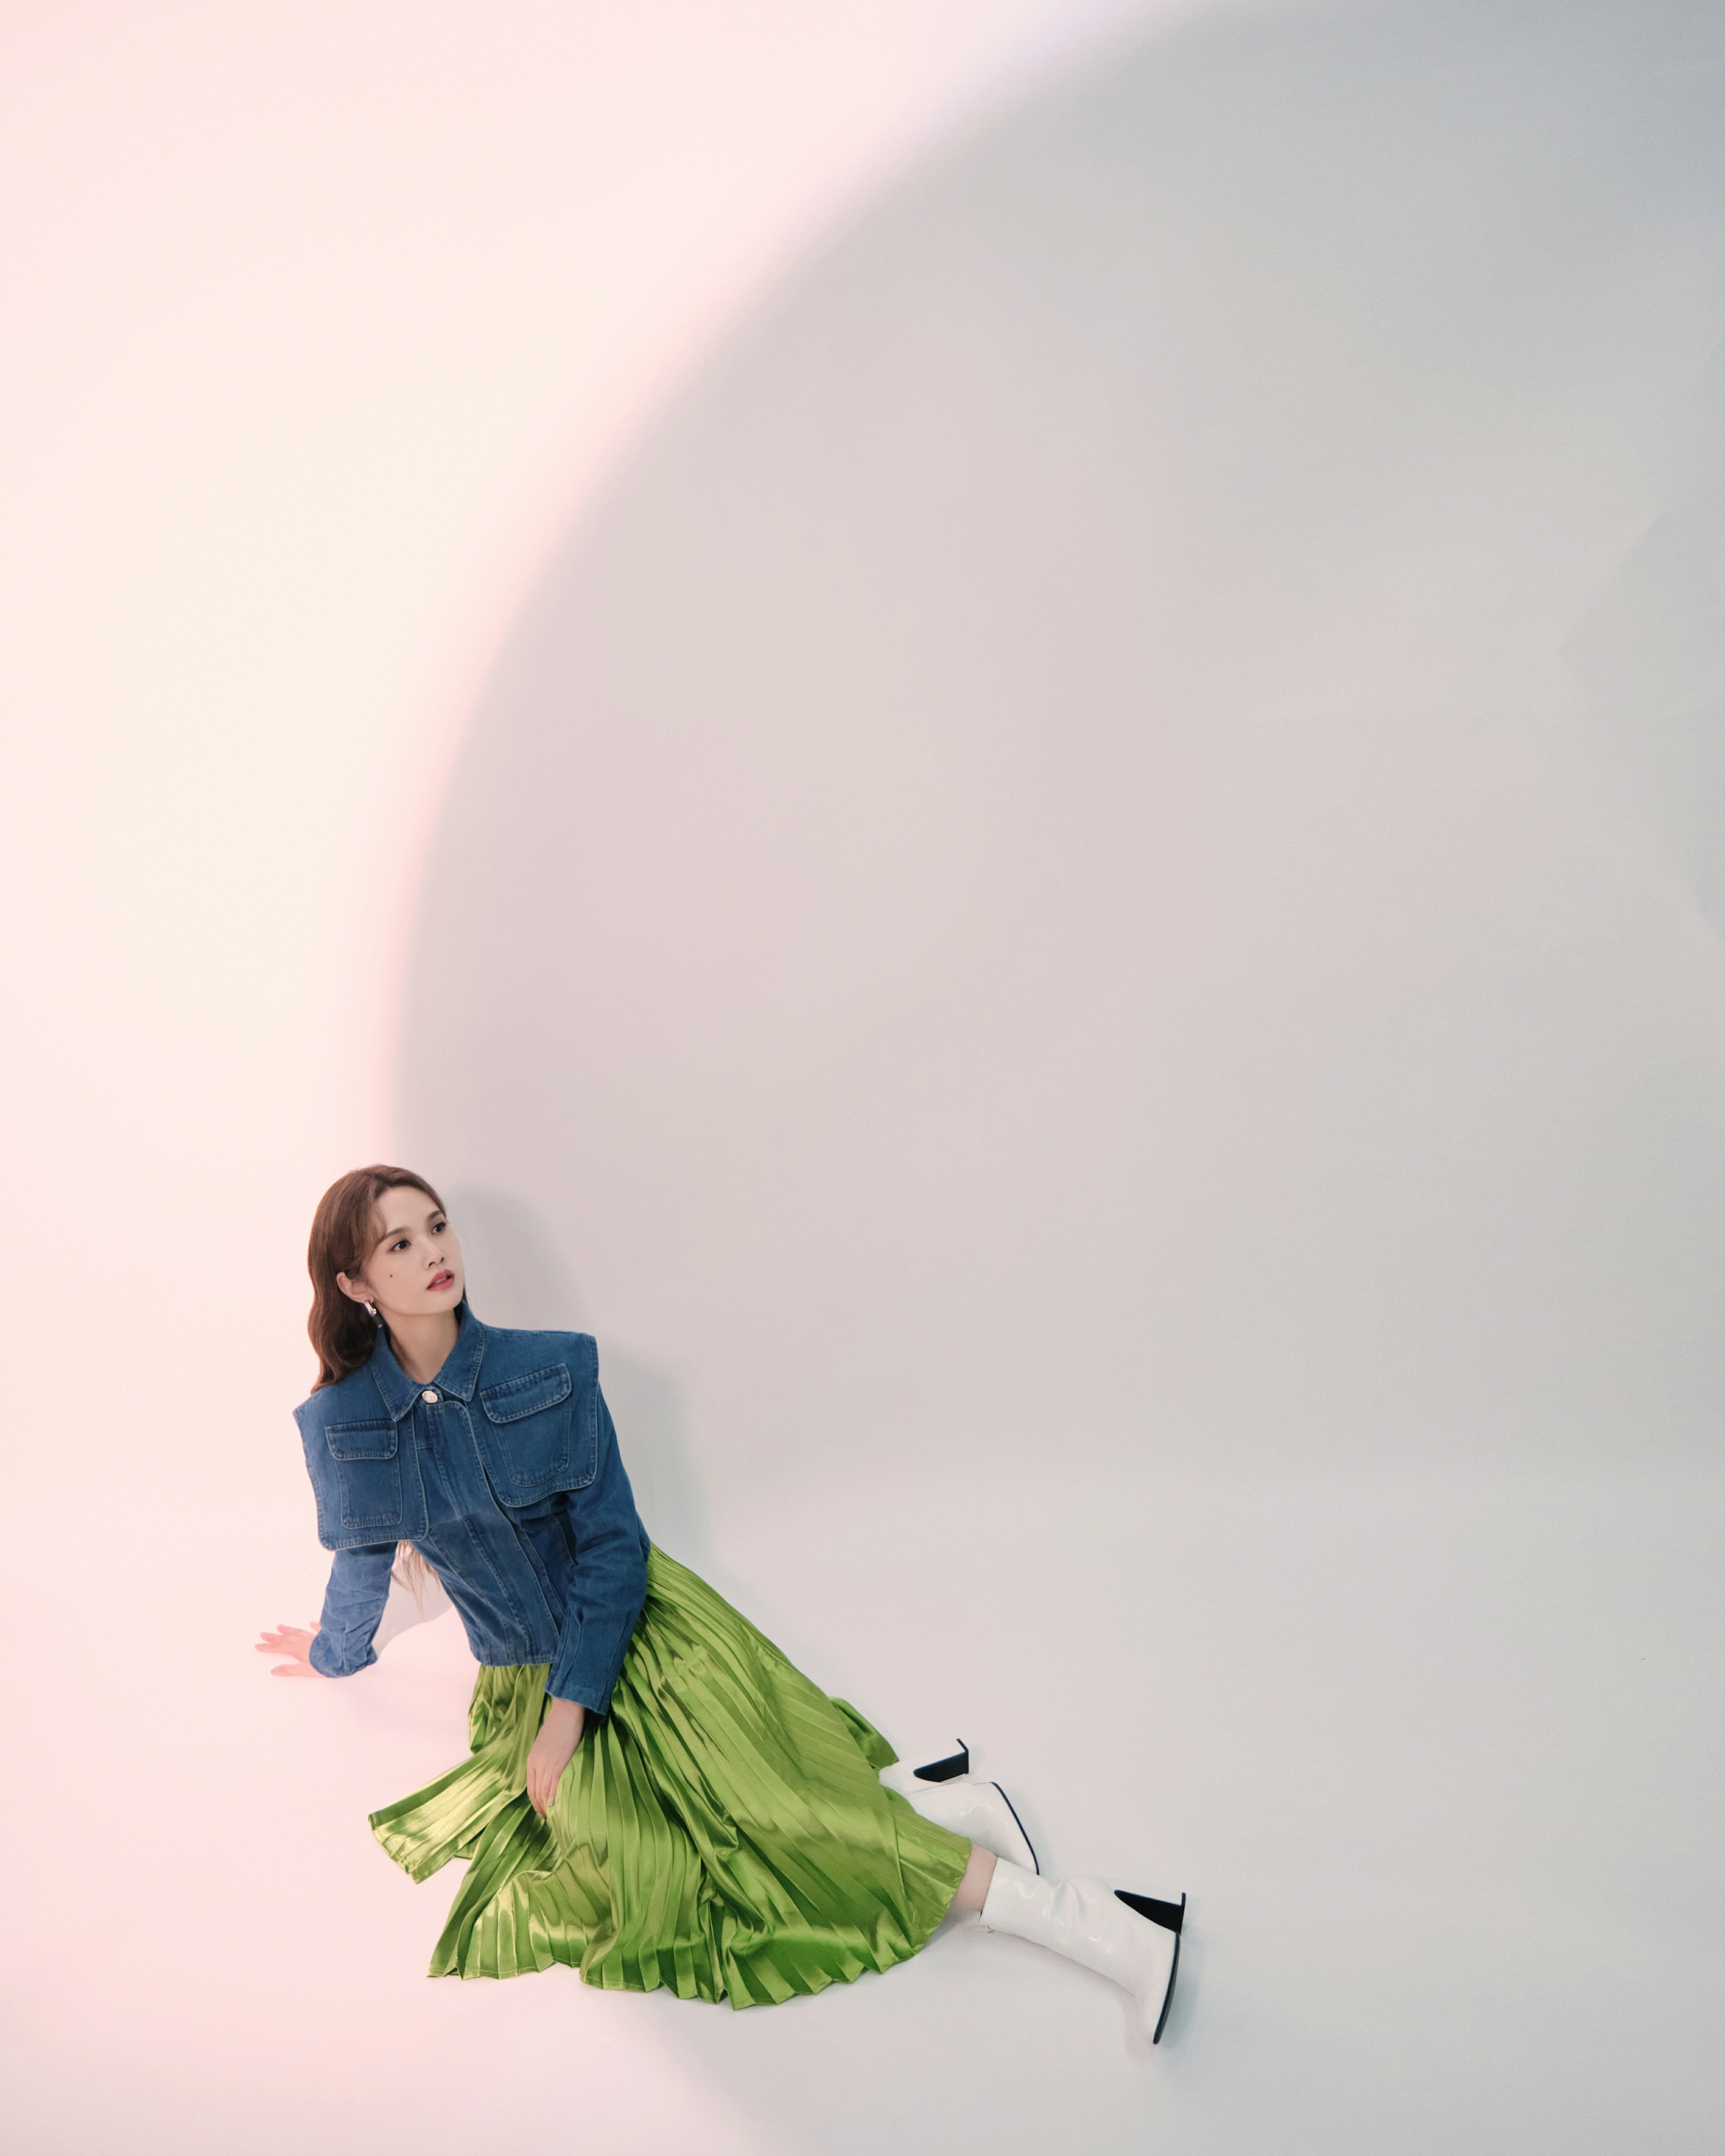 杨丞琳《我们的歌》造型写真释出 牛仔外套搭果绿半裙可甜可盐,7